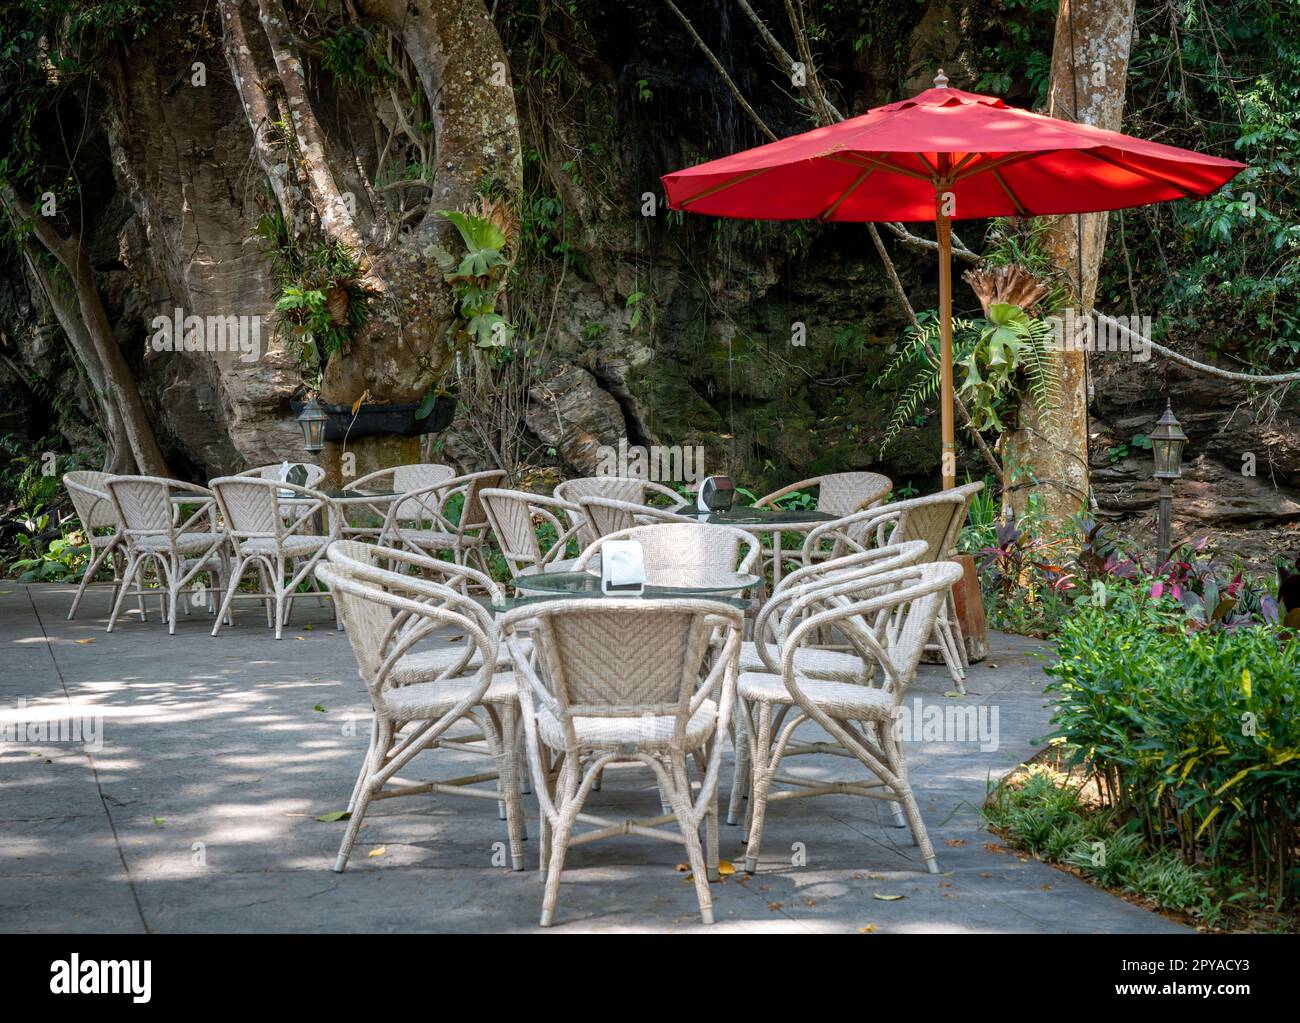 Un café en plein air, avec plusieurs tables et chaises disposées autour d'un parapluie rouge vif, sur fond d'arbres verts luxuriants Banque D'Images